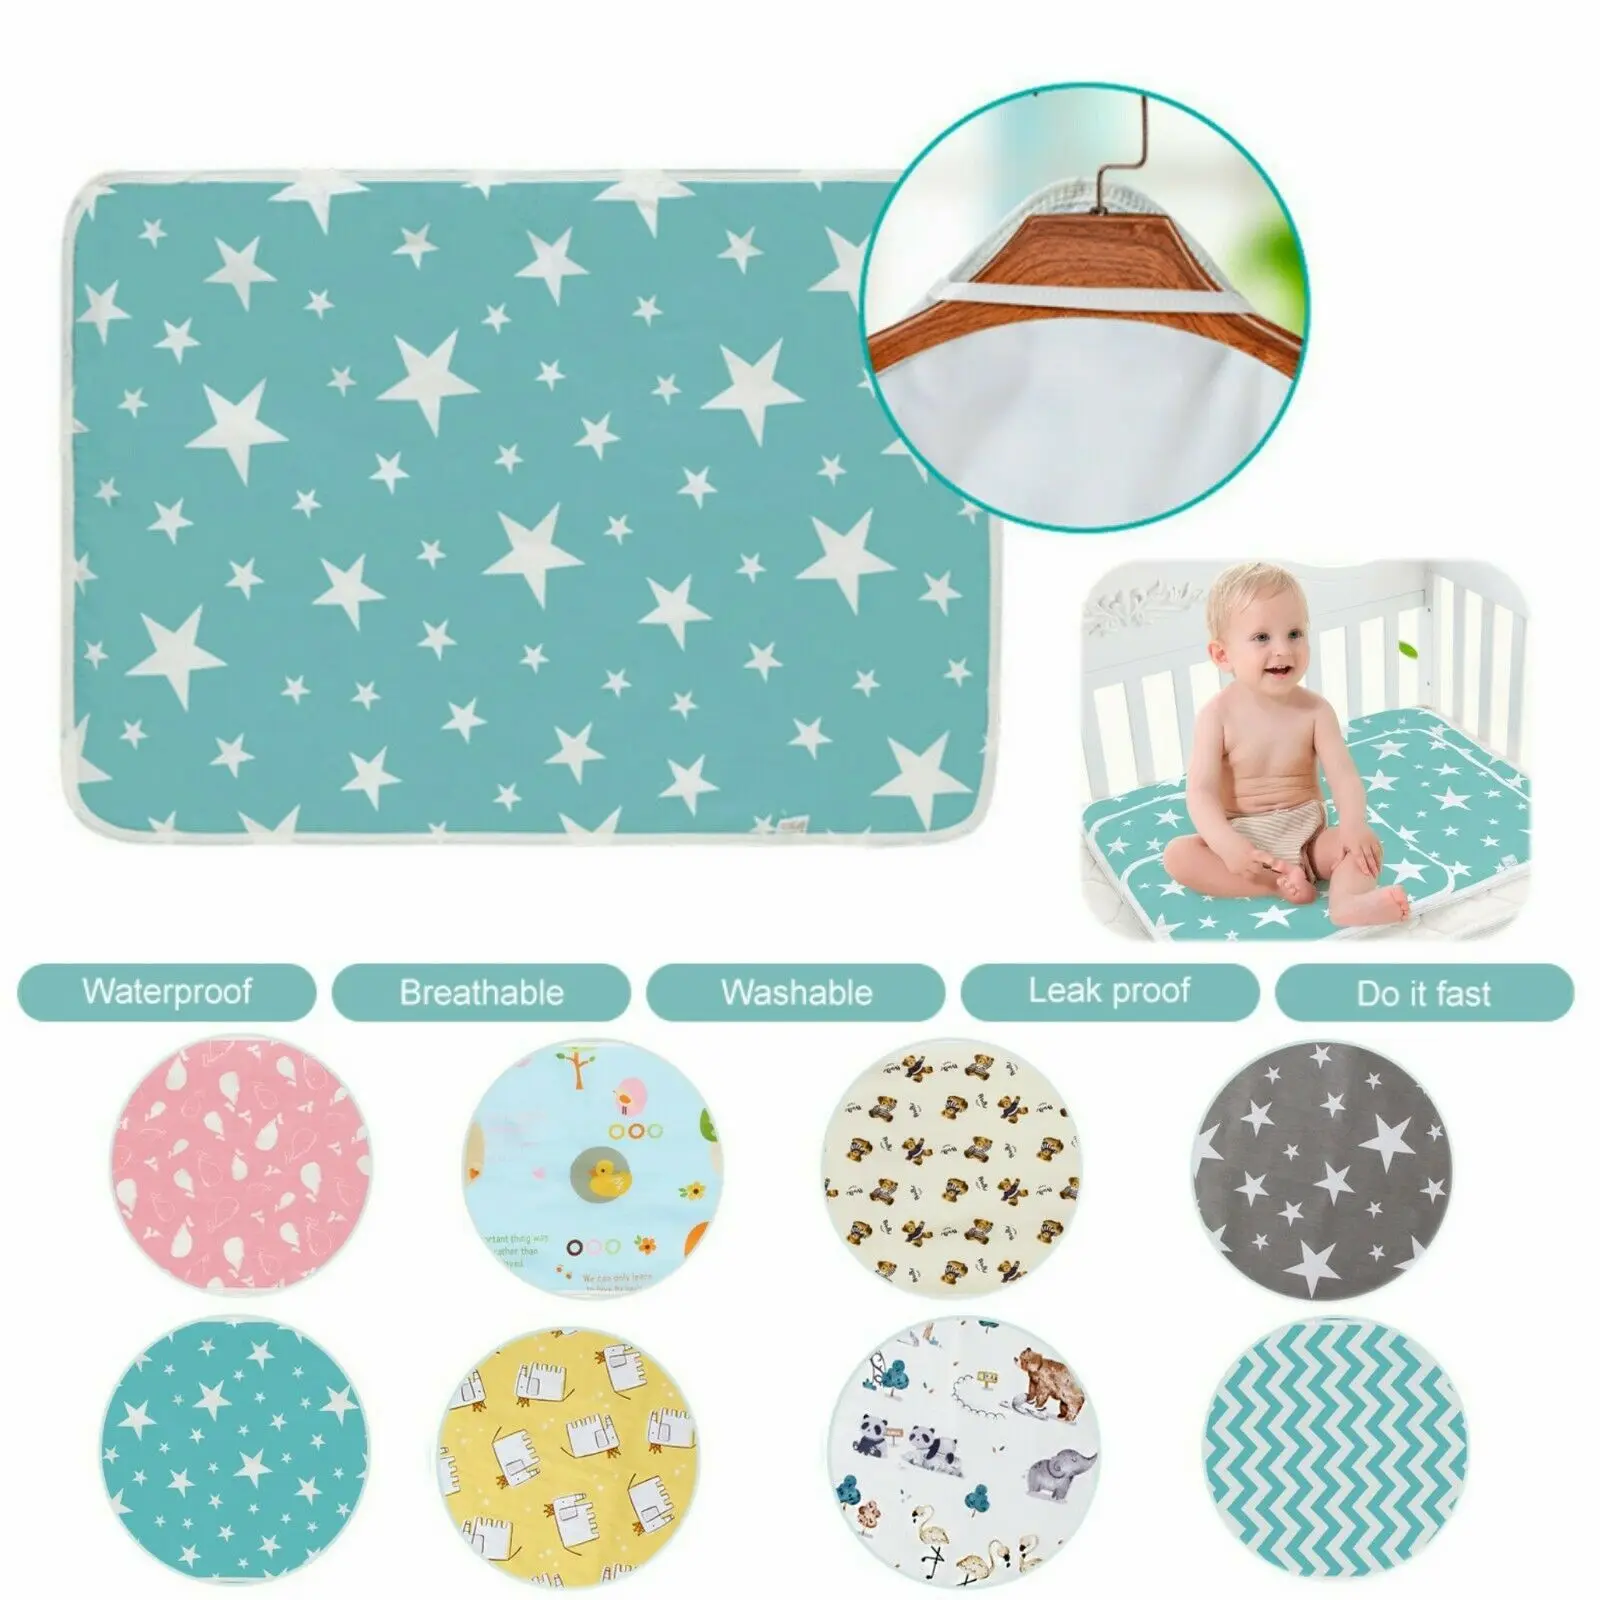 

Многоразовые пеленки для новорожденных, портативные хлопковые подгузники для смены, водонепроницаемые, для игр